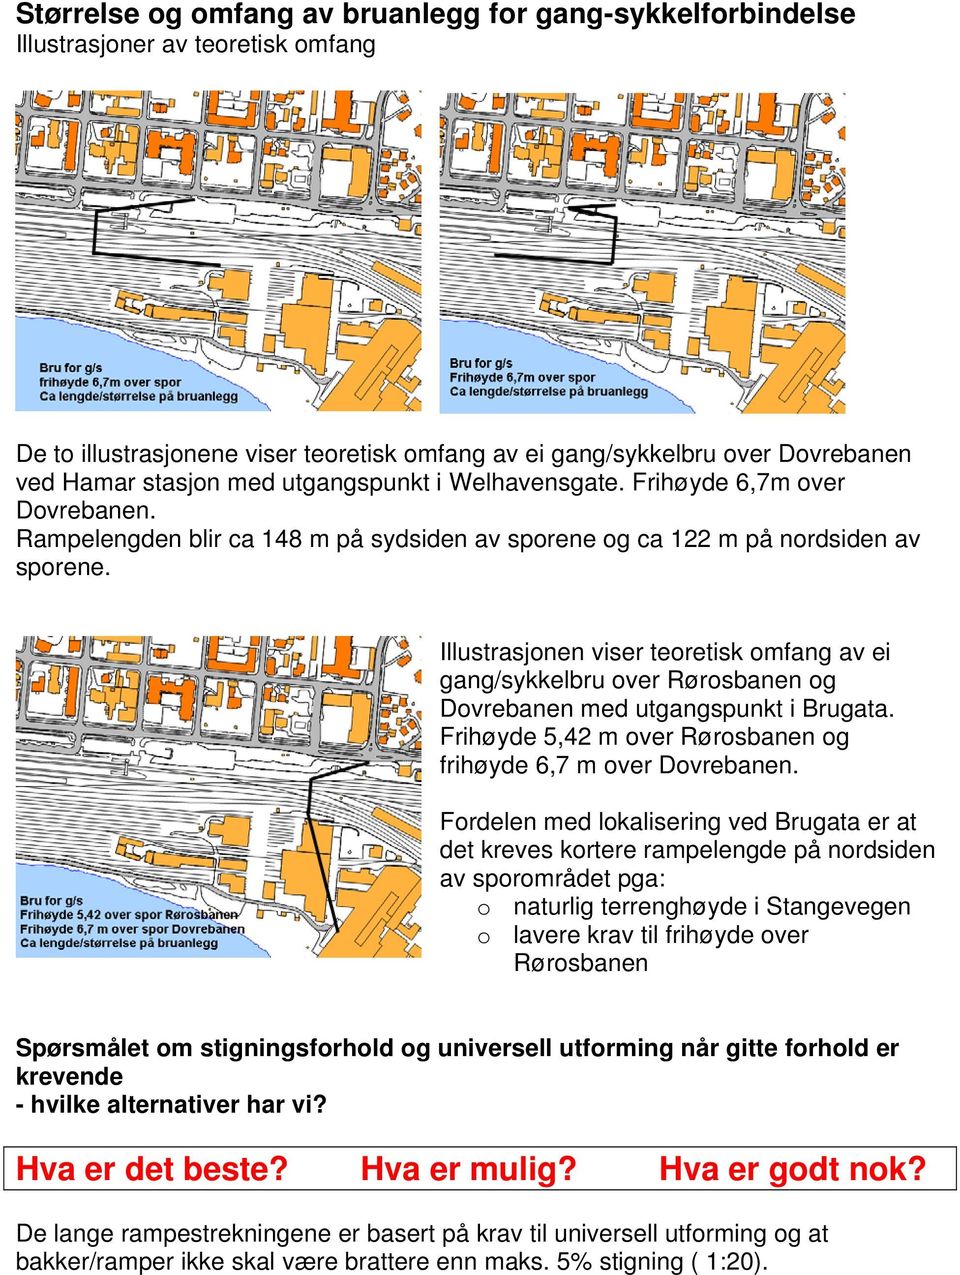 Illustrasjonen viser teoretisk omfang av ei gang/sykkelbru over Rørosbanen og Dovrebanen med utgangspunkt i Brugata. Frihøyde 5,42 m over Rørosbanen og frihøyde 6,7 m over Dovrebanen.